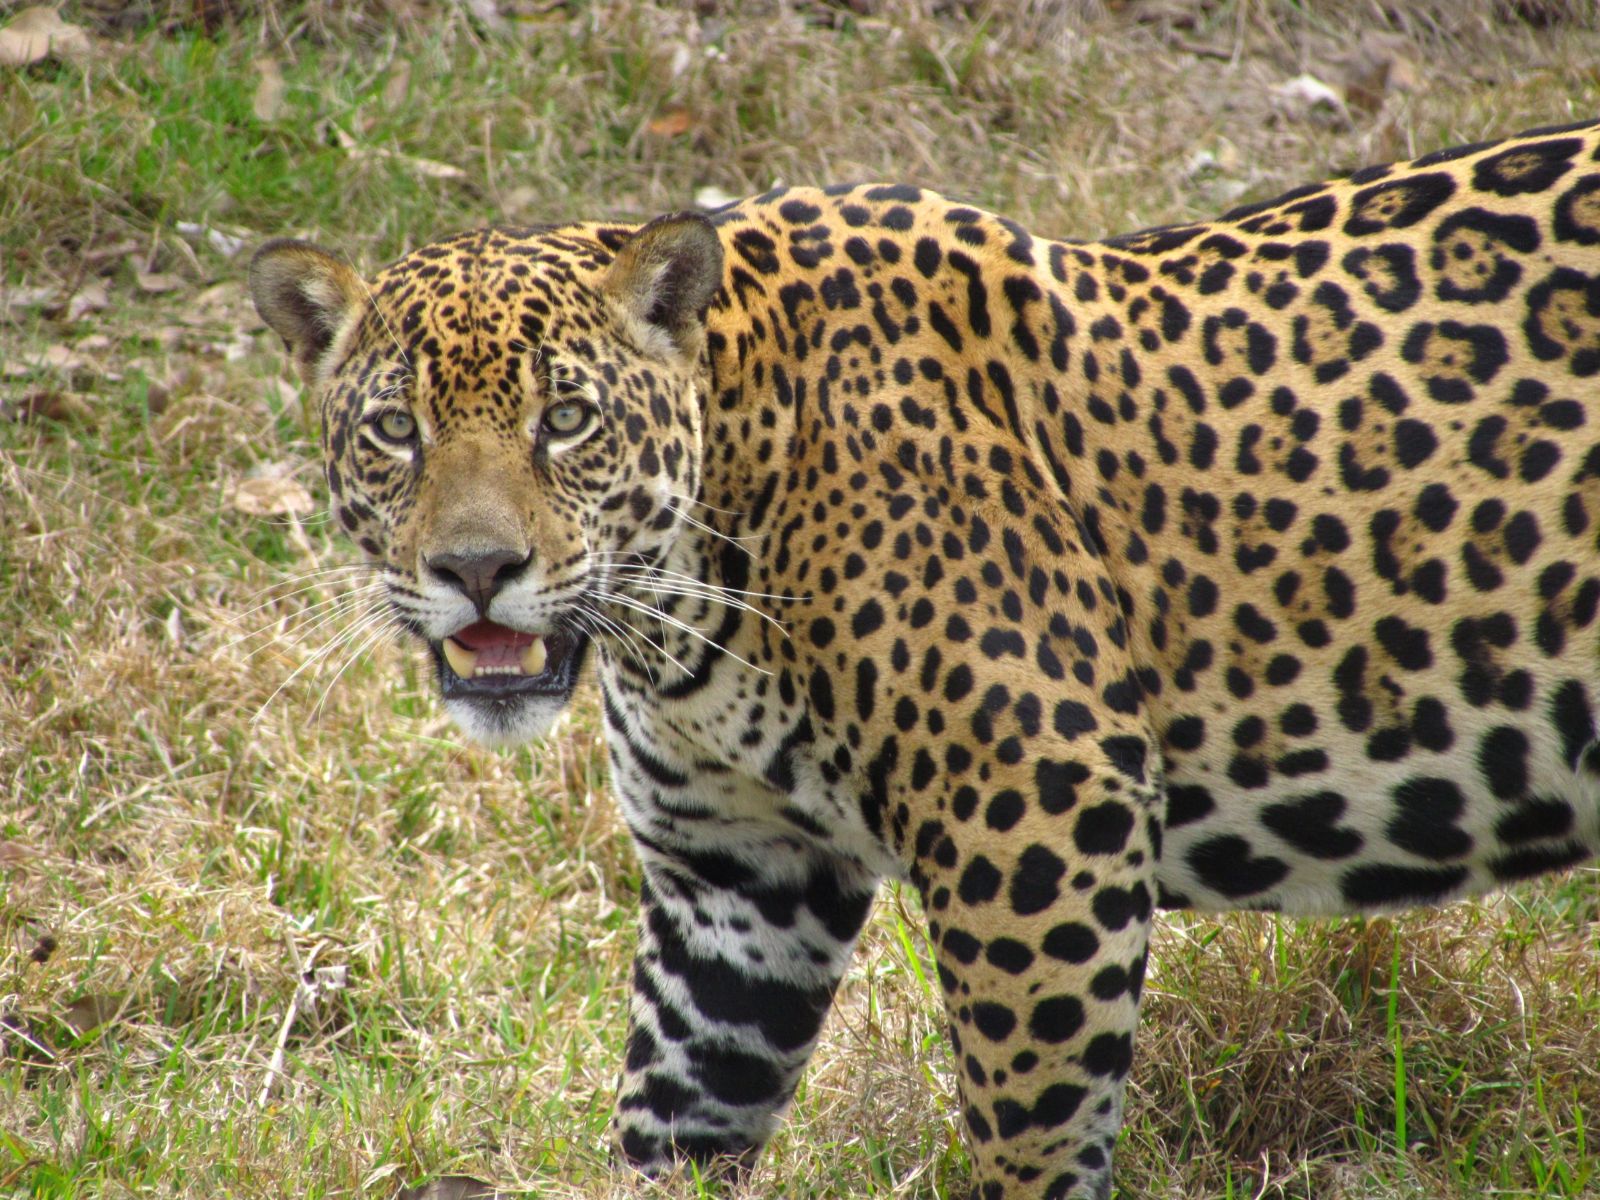 A jaguar spotted Caiman, Pantanal